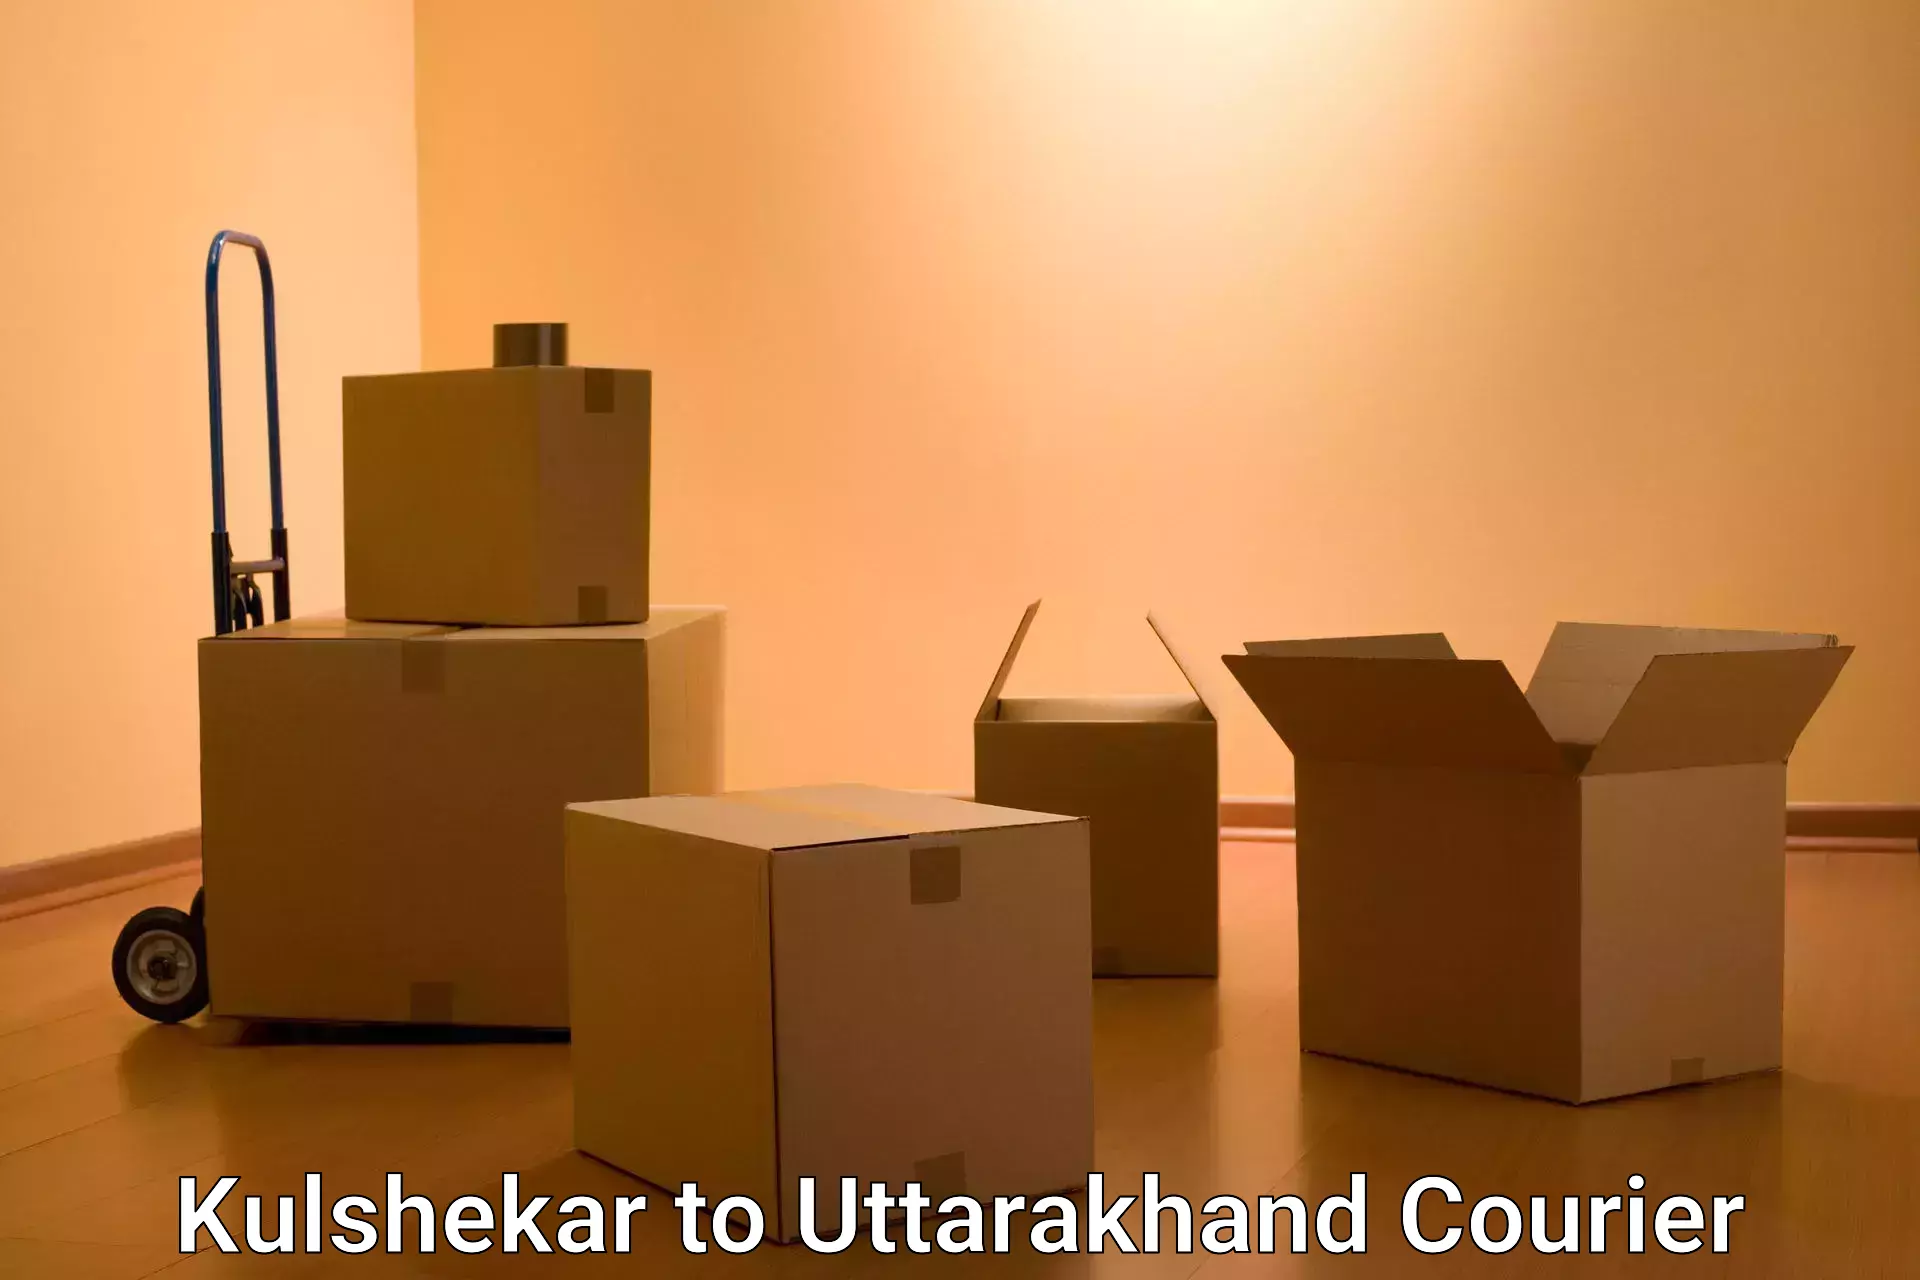 24/7 courier service Kulshekar to Uttarakhand